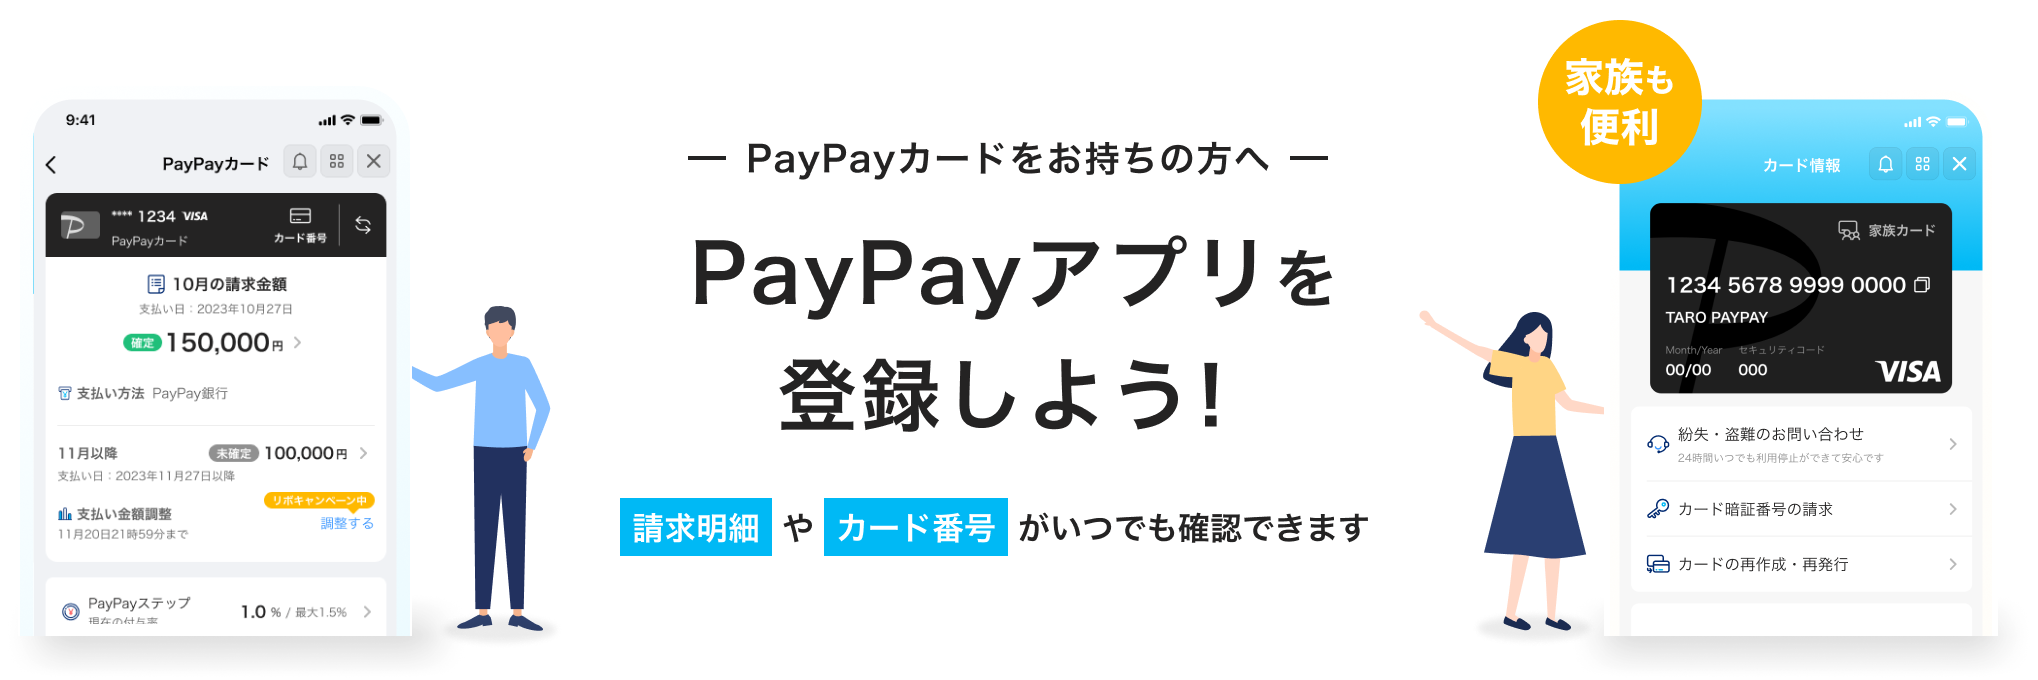 PayPayカードをお持ちの方へ PayPayアプリを登録しよう！請求明細やカード番号がいつでも確認できます